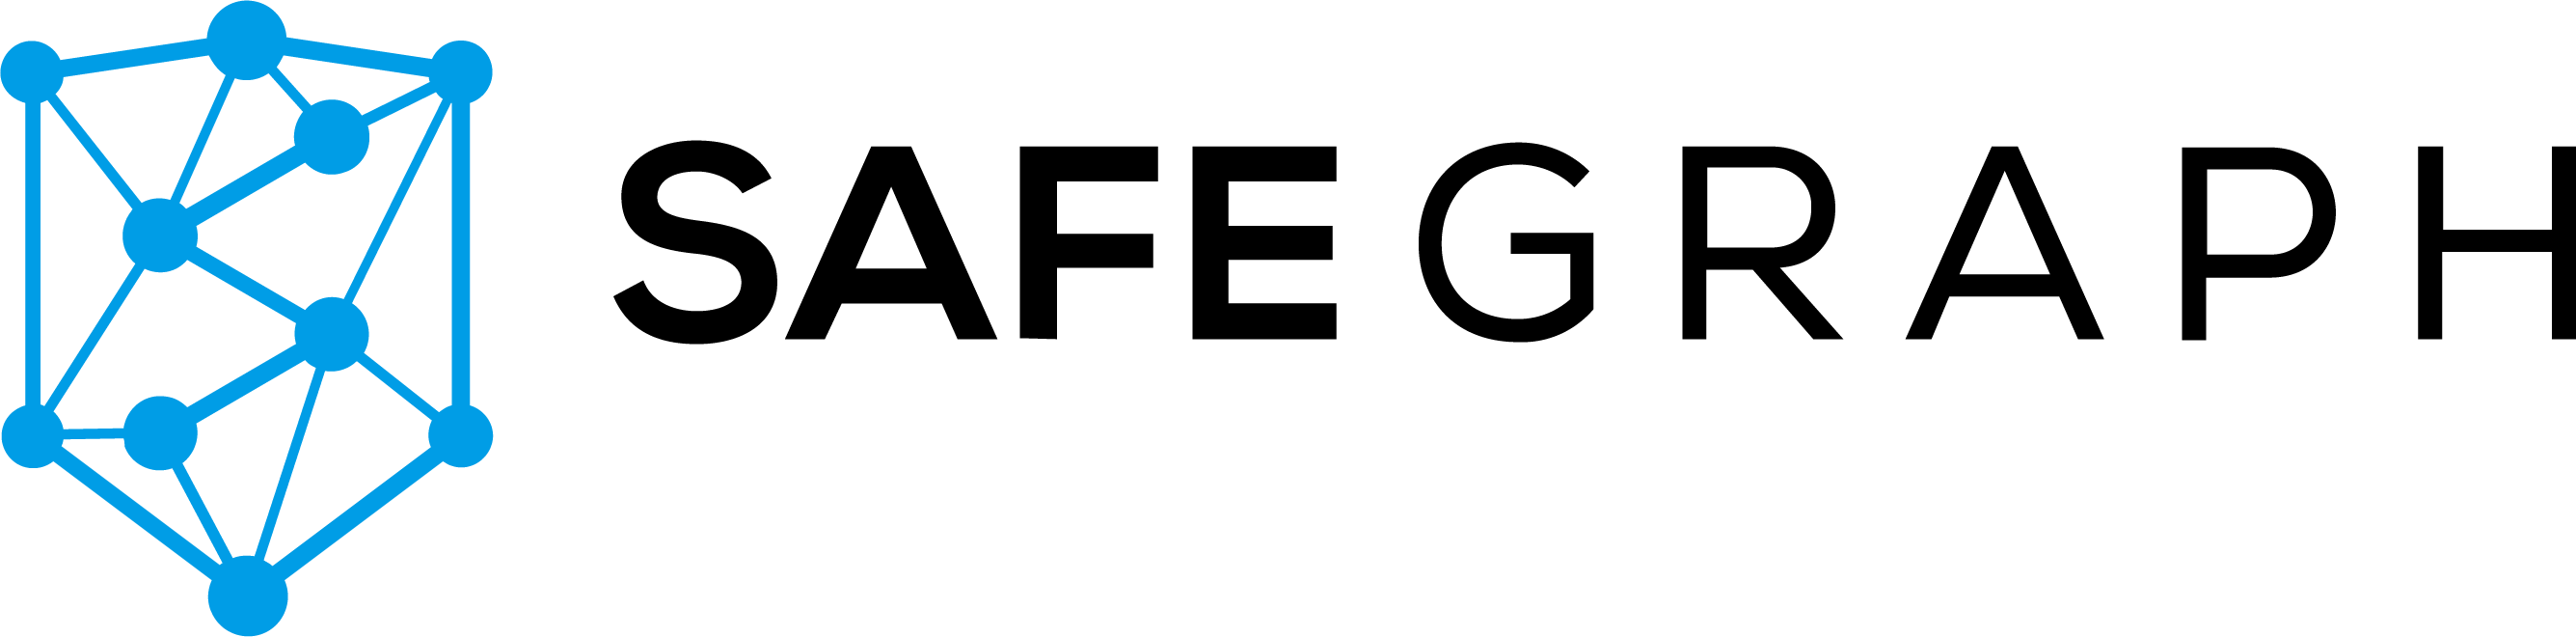 safegraph logo